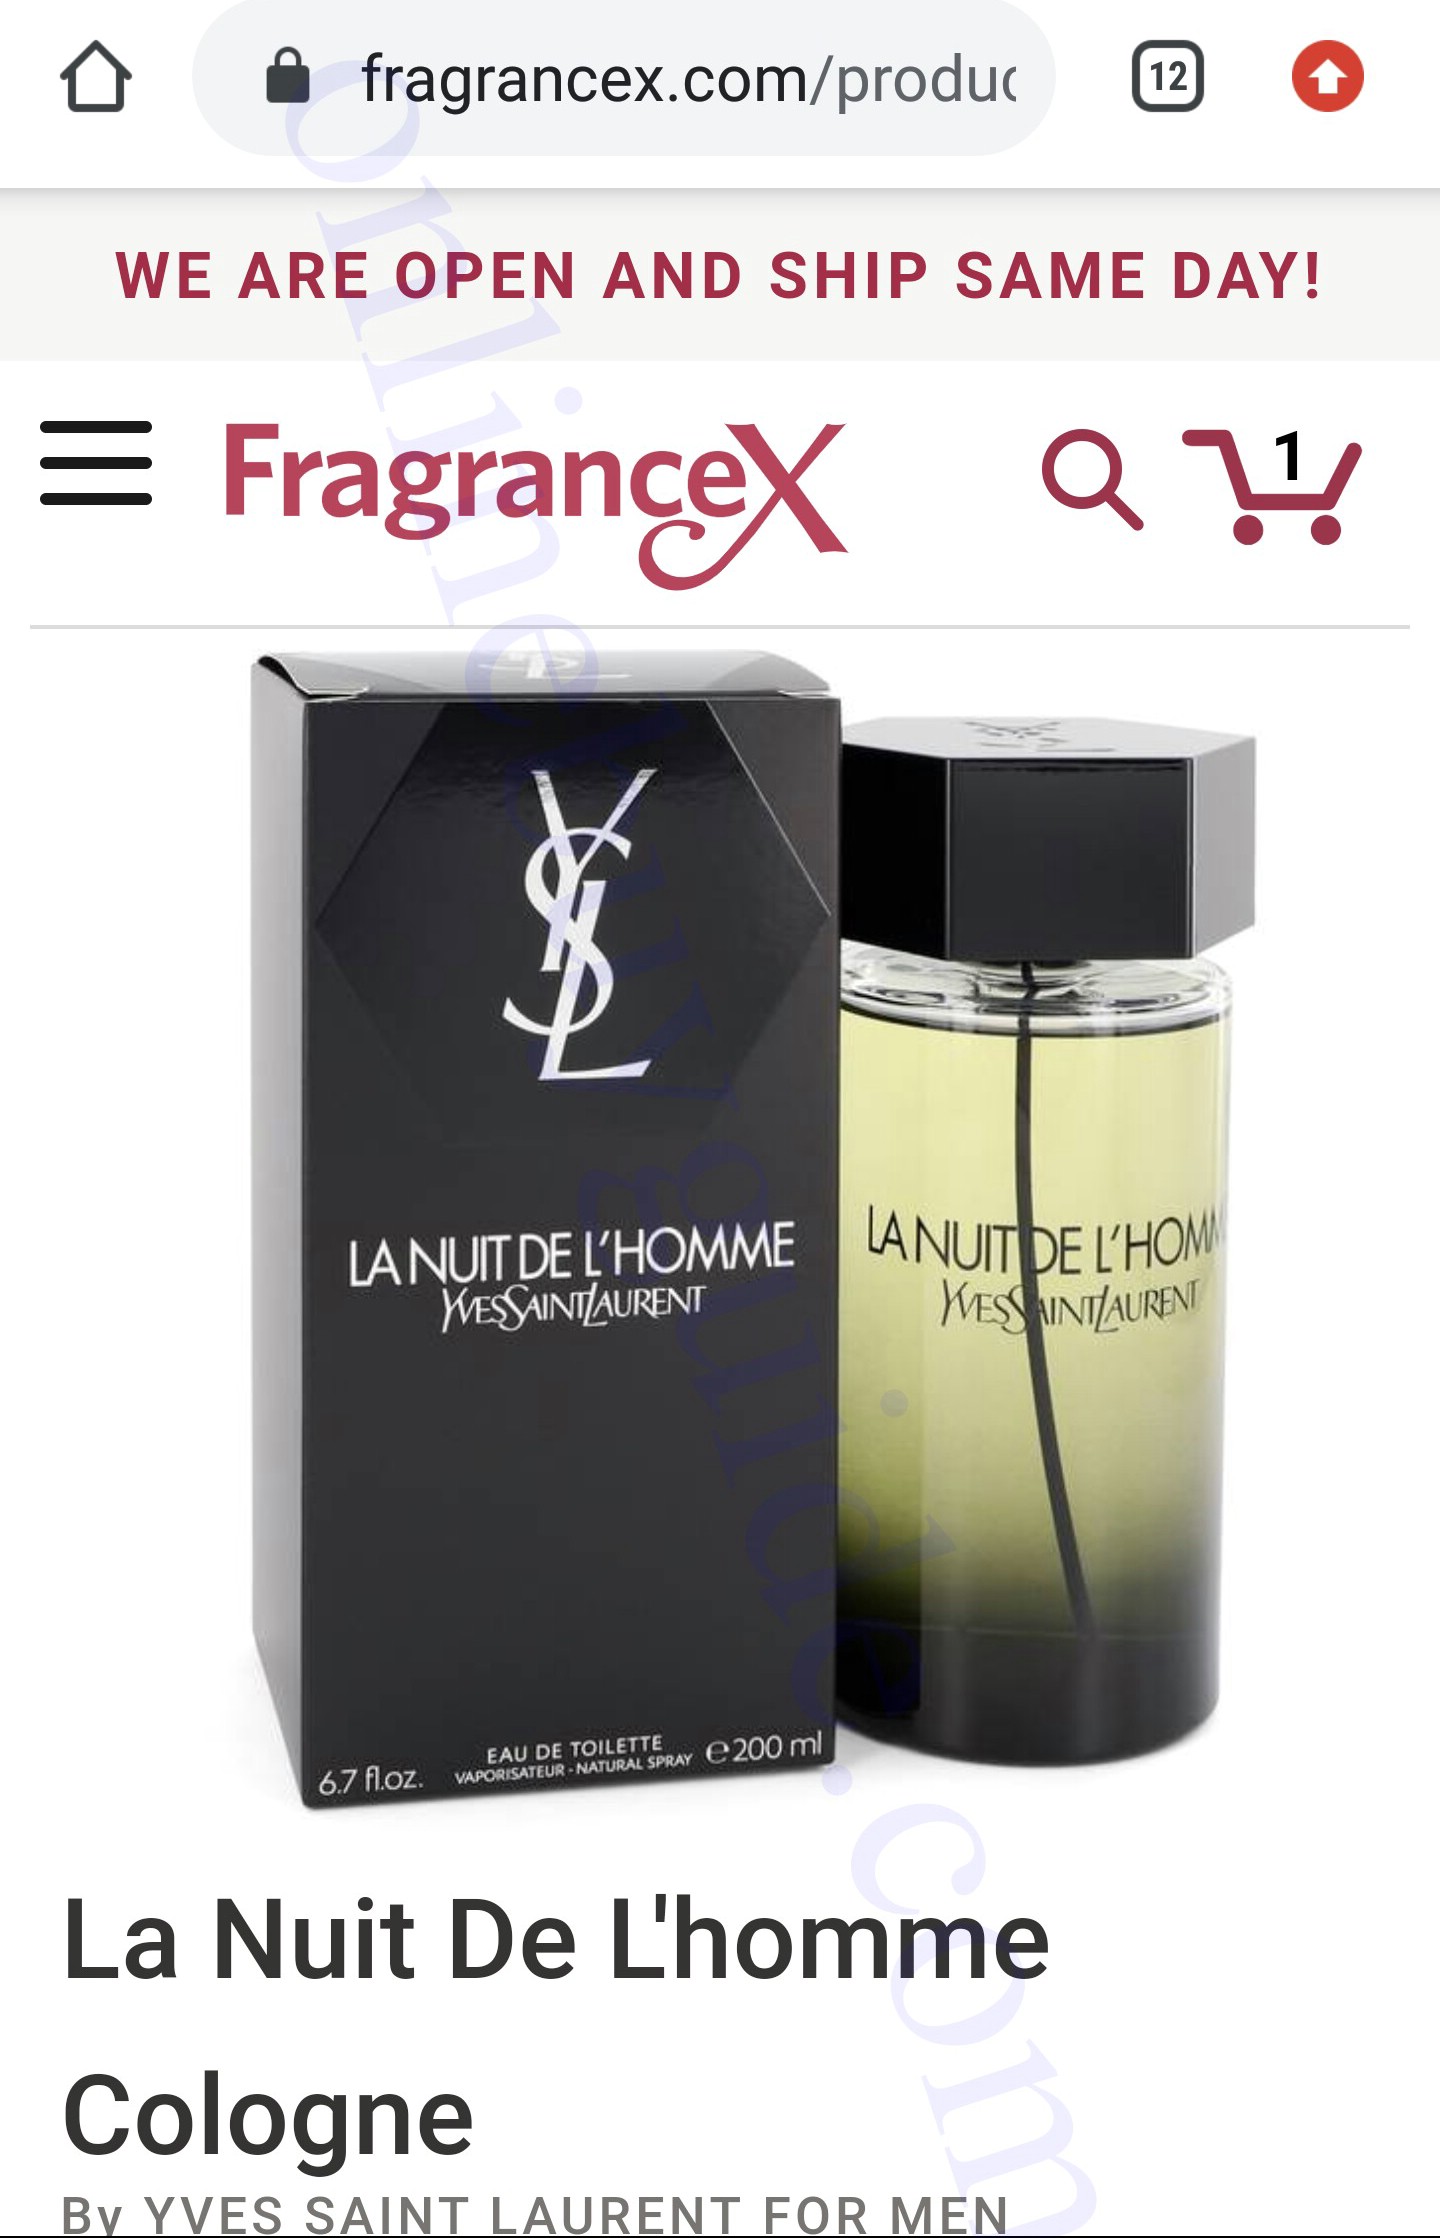 شرح و تجربة موقع fragrancex